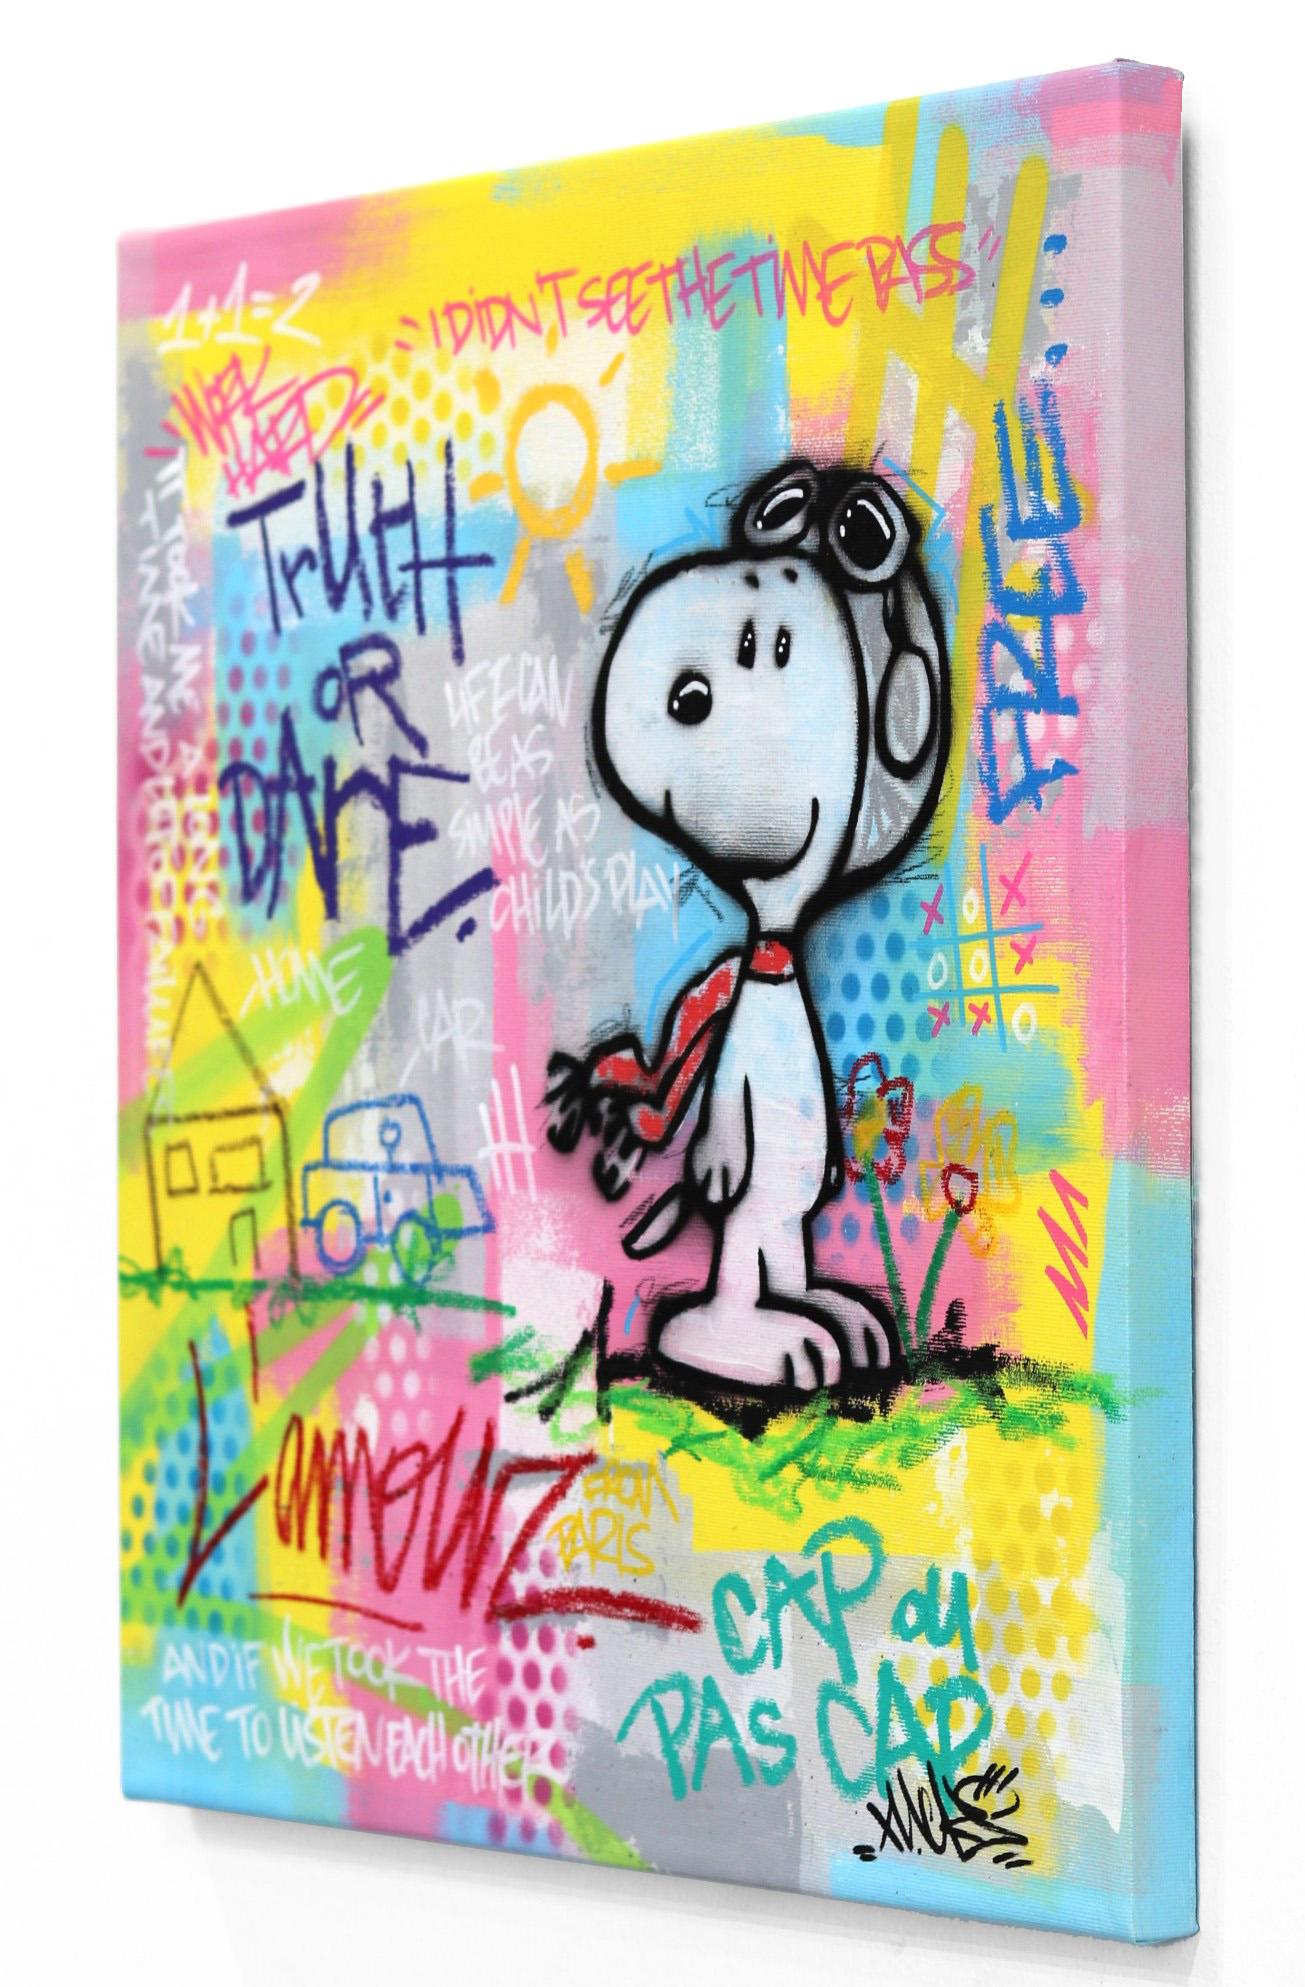 Naguy Claude mischt in seinen originellen Mischtechnik-Gemälden Ikonen der Populärkultur und Street Art mit Comic- und Cartoonfiguren sowie berühmten Superhelden. Seine Werke drücken eine Faszination für hochemotionale Inhalte aus und bewahren